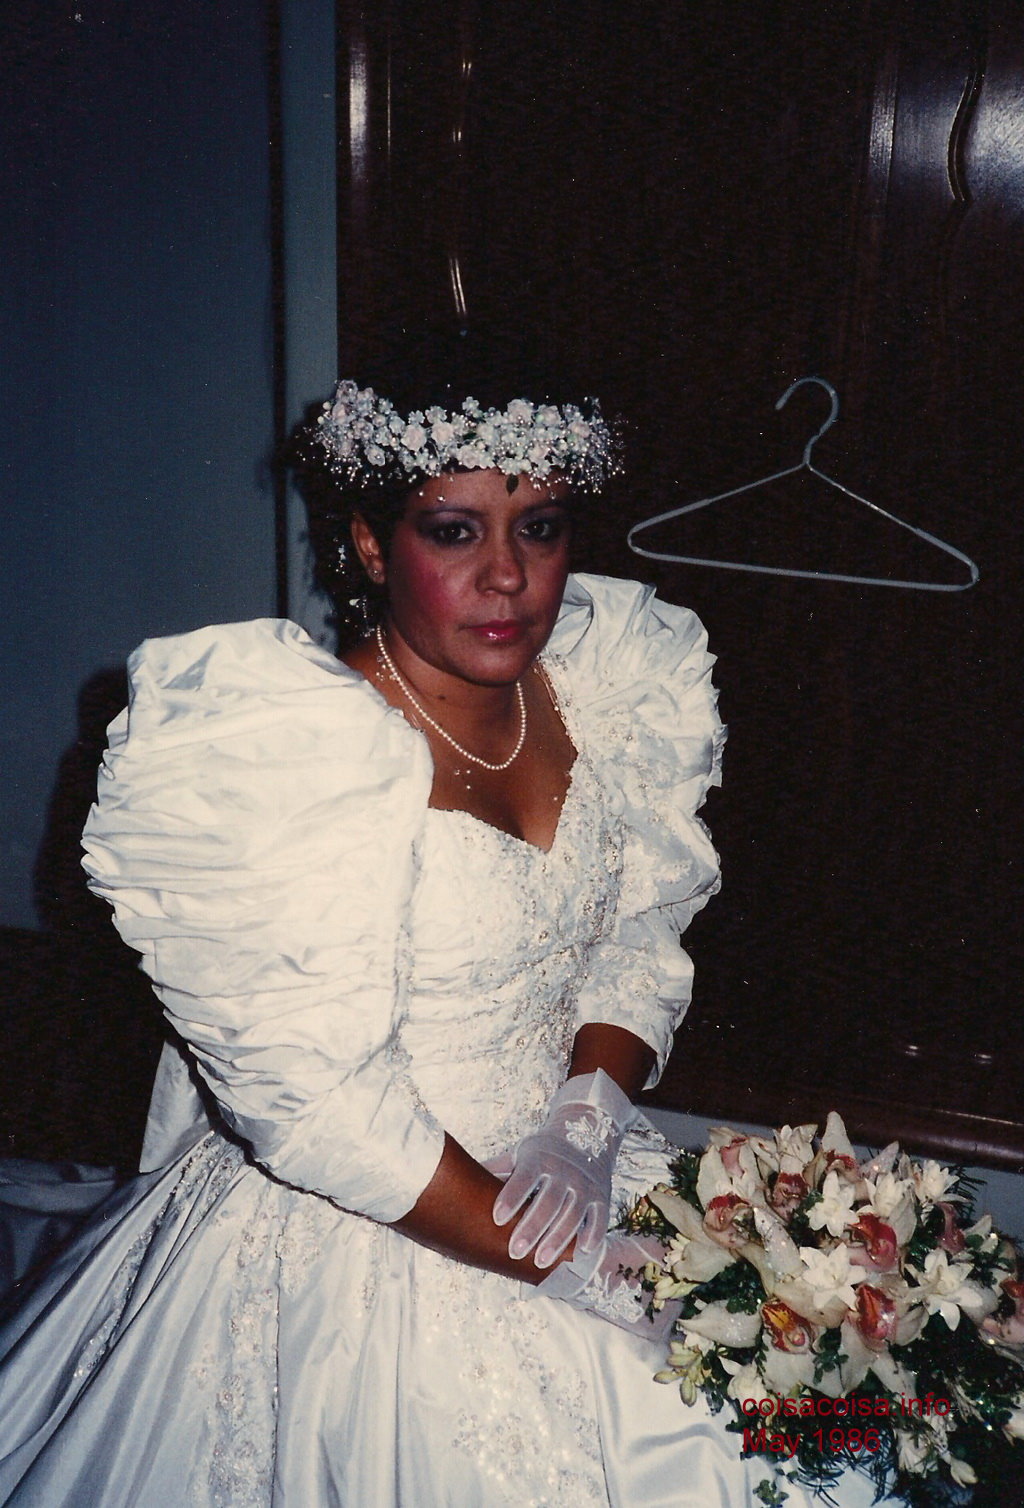 Heloisa the Bride